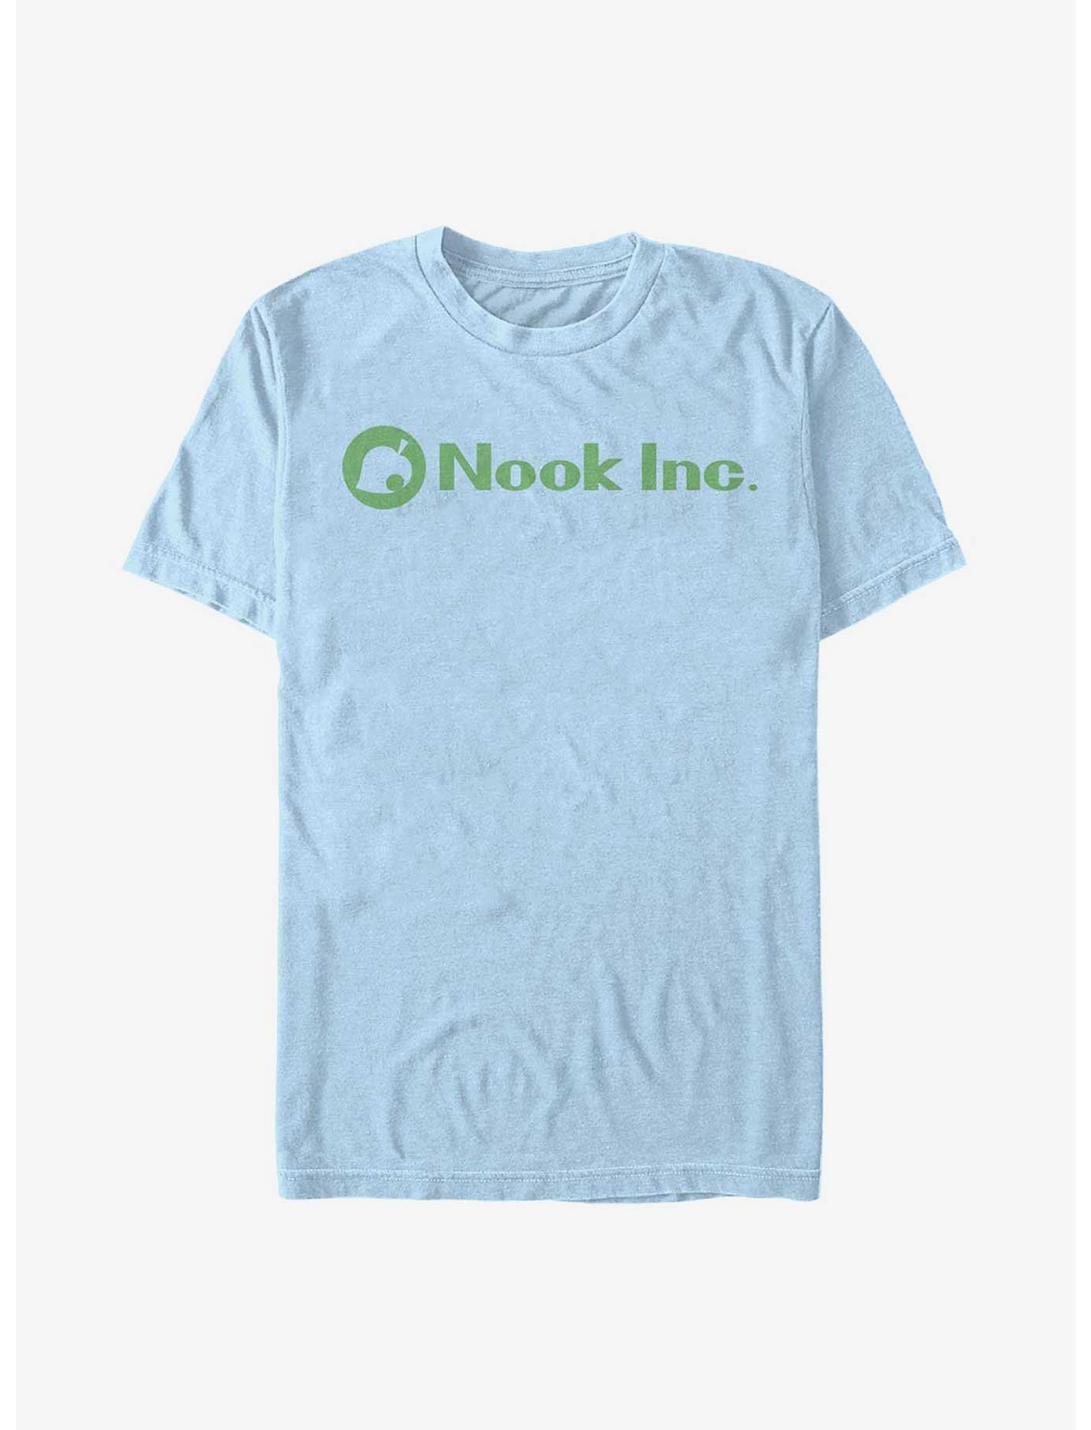 Nintendo Nook Inc. Logo T-Shirt, LT BLUE, hi-res